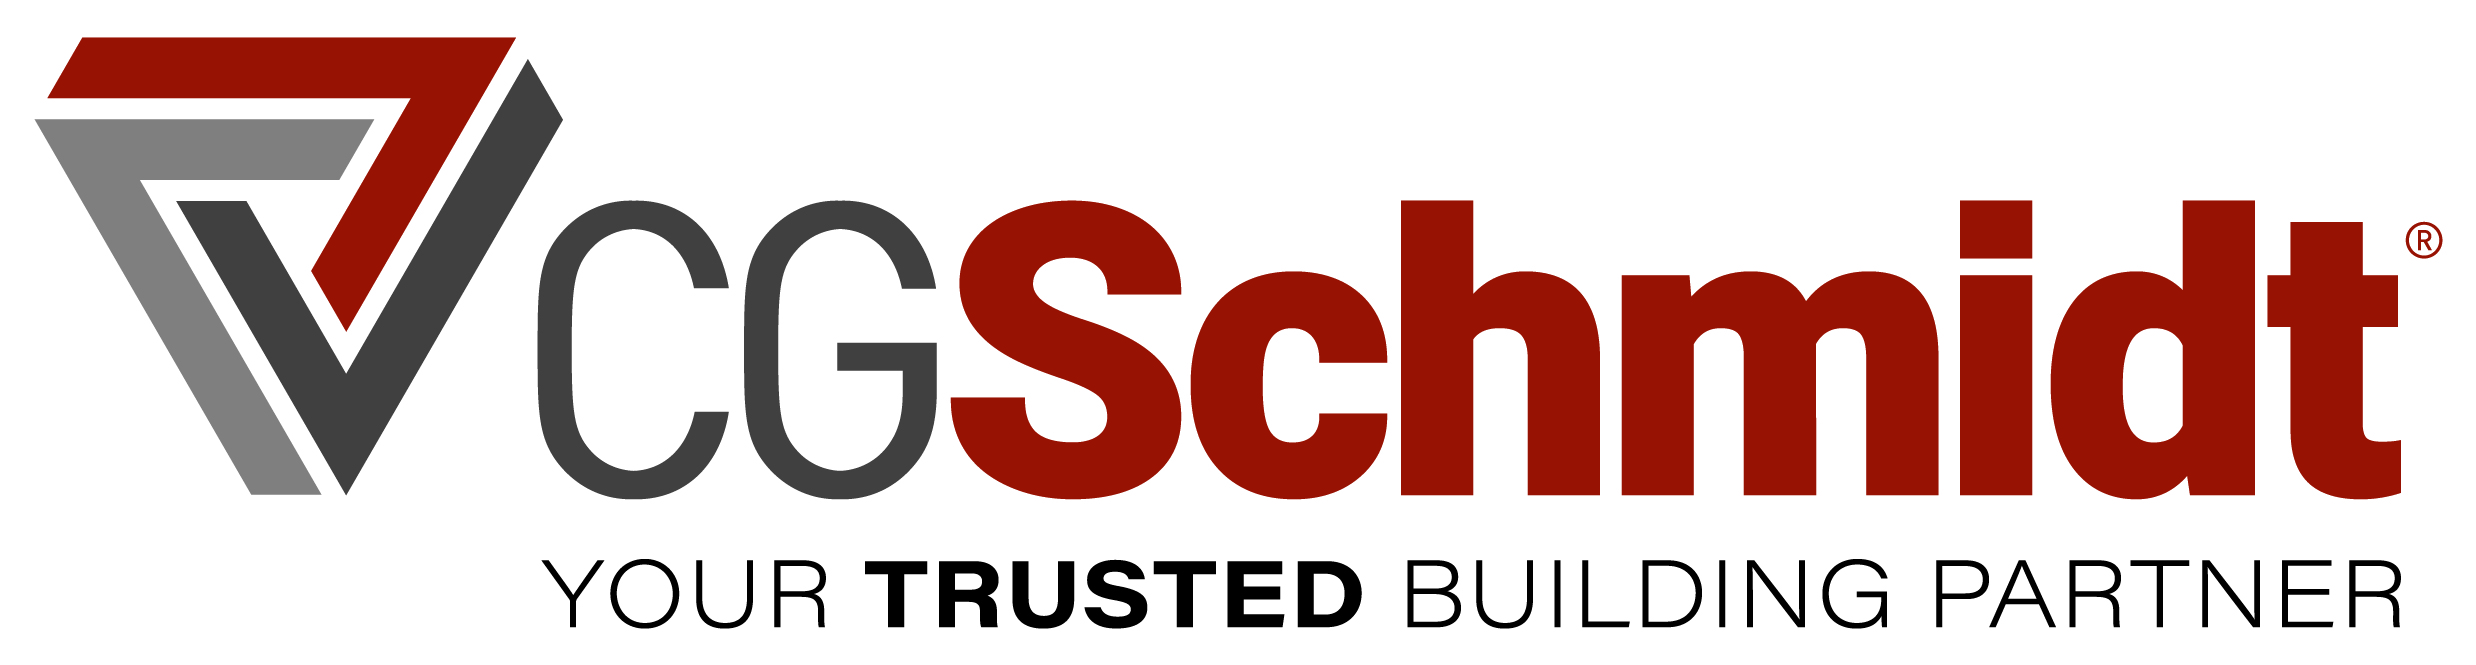 CGSchmidt Logo